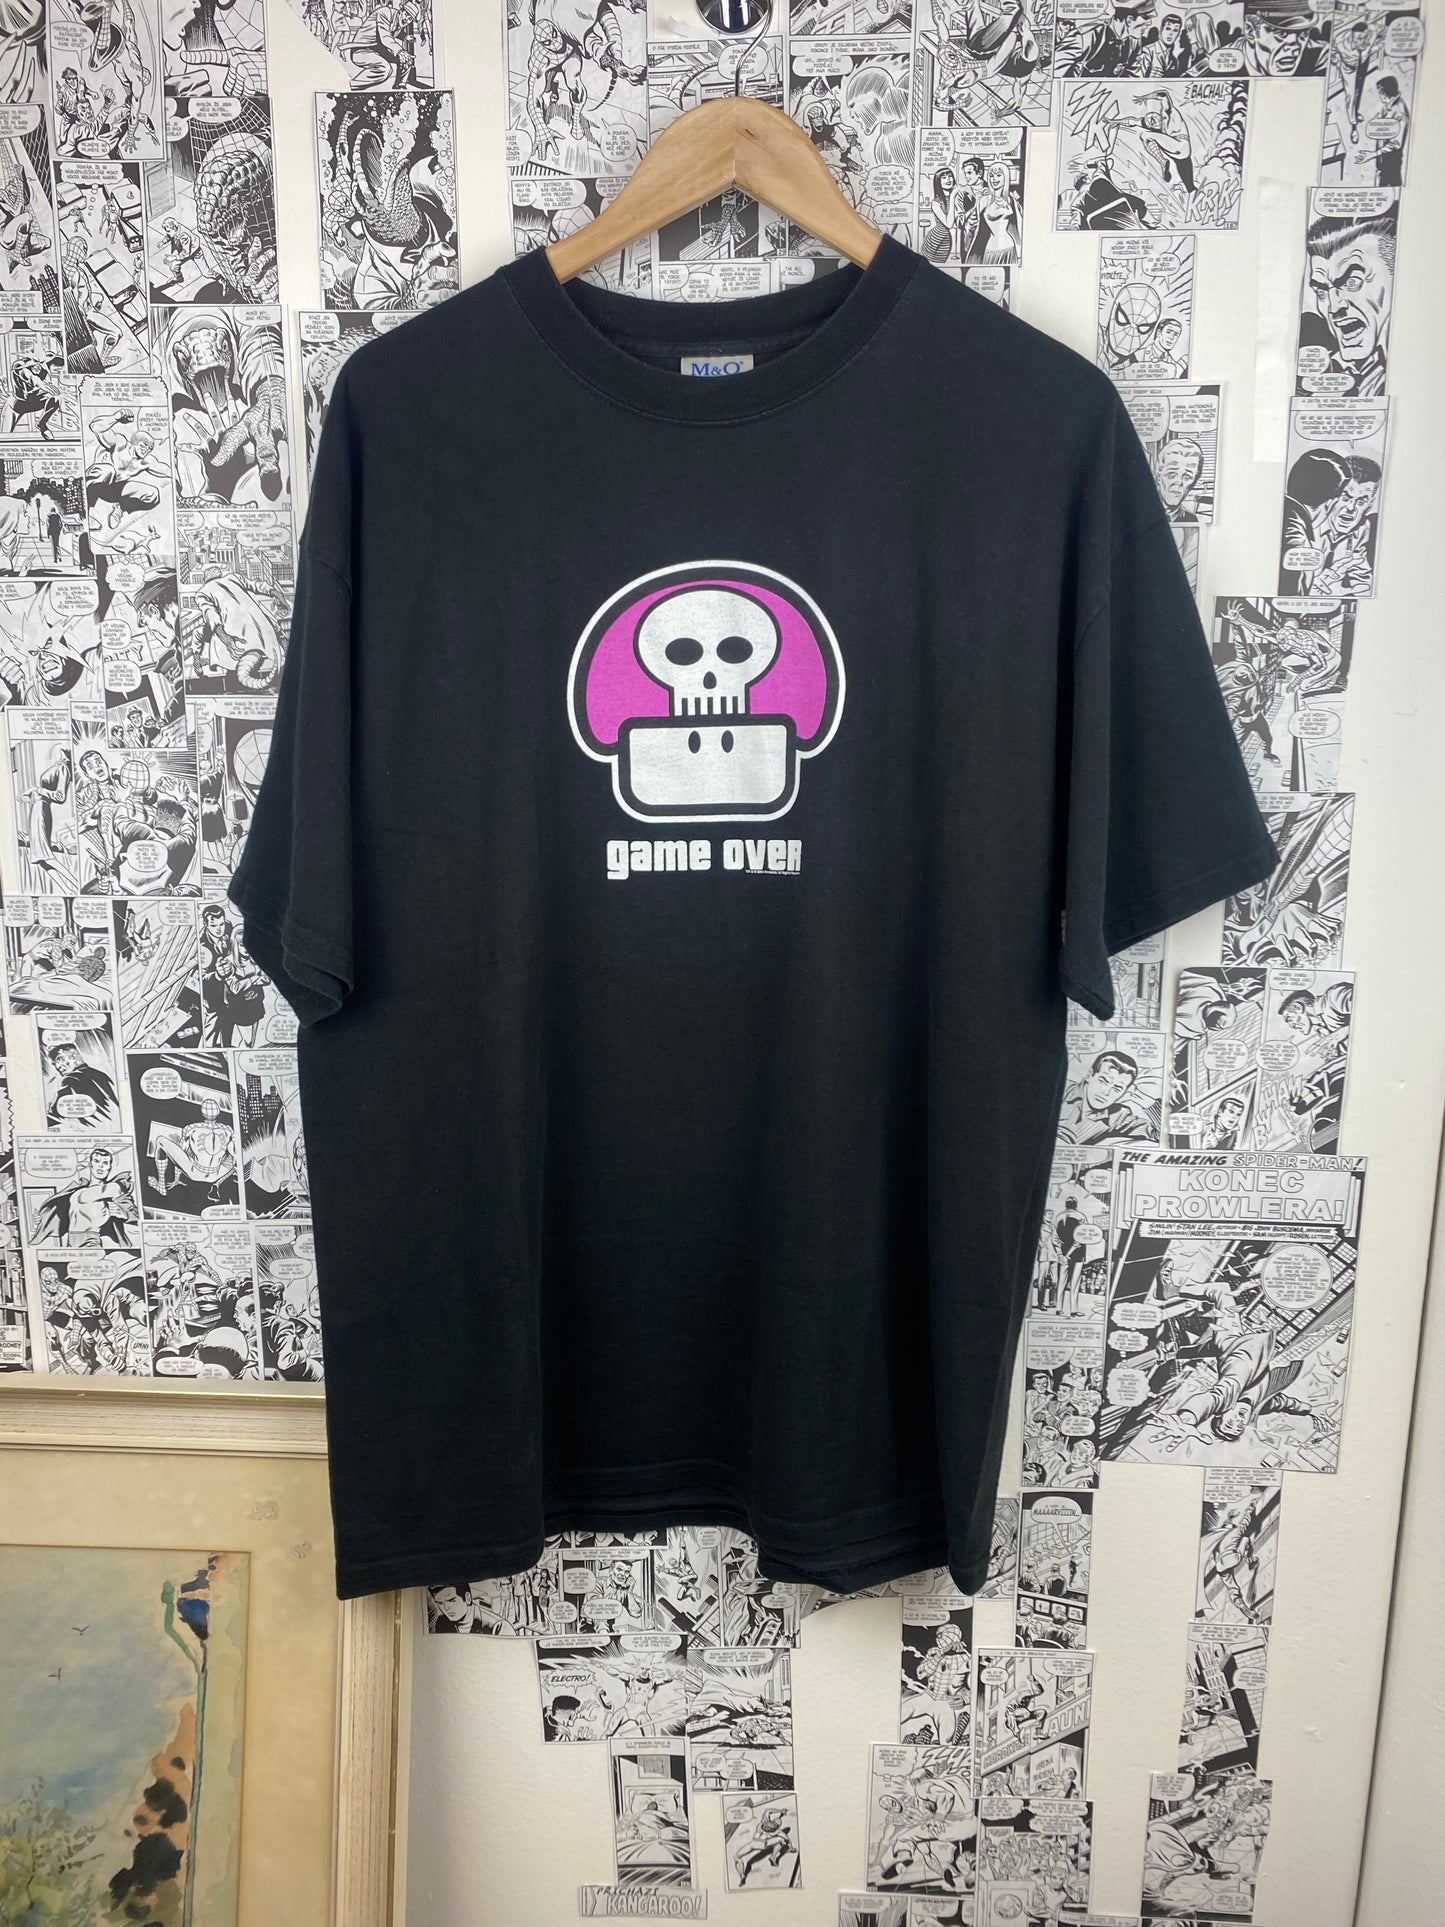 Vintage Nintendo “Game Over” 2003 t-shirt